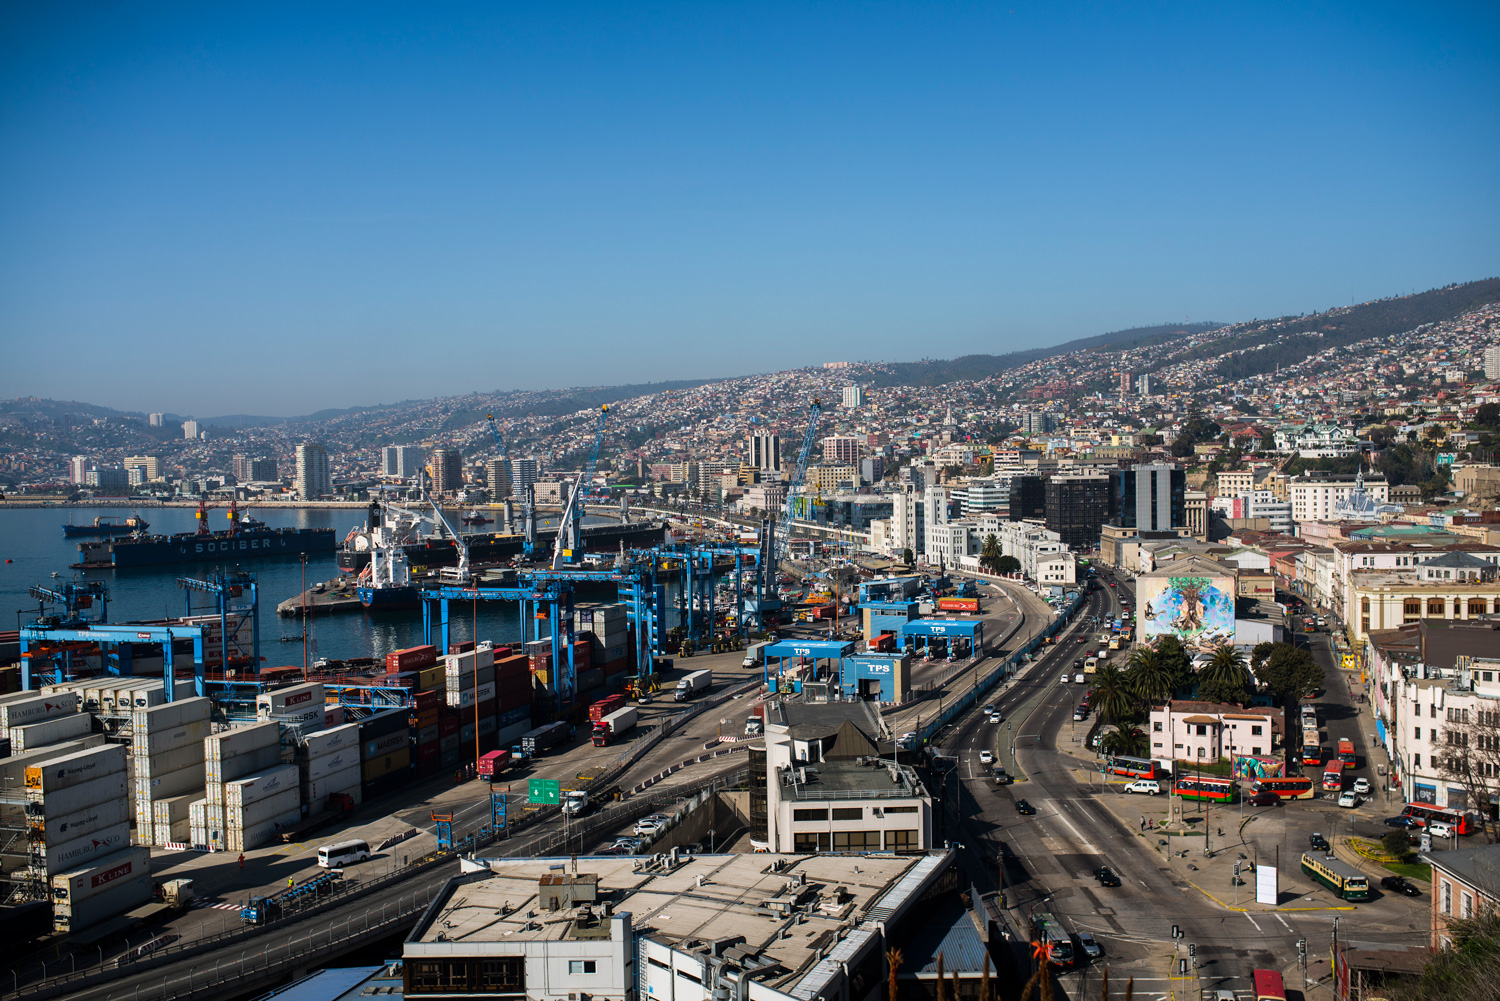 Electrizar En el piso Tomar un baño Barrio Puerto de Valparaíso - Chile es TUYO